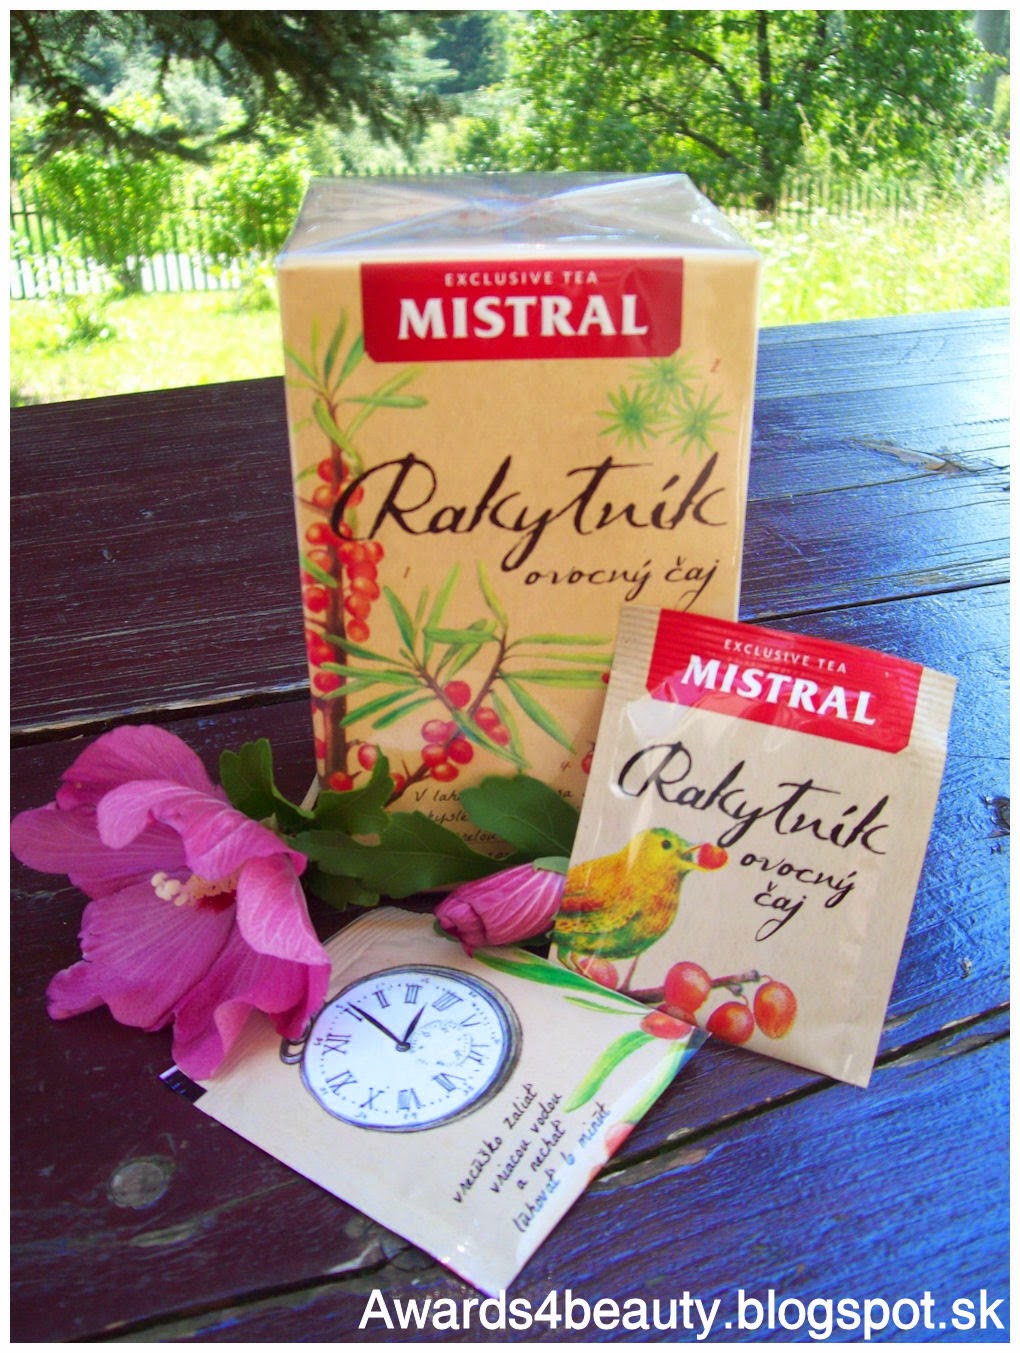 Ovocný čaj Mistral z rakytníka v krásnom obale s kreslenými detailami.